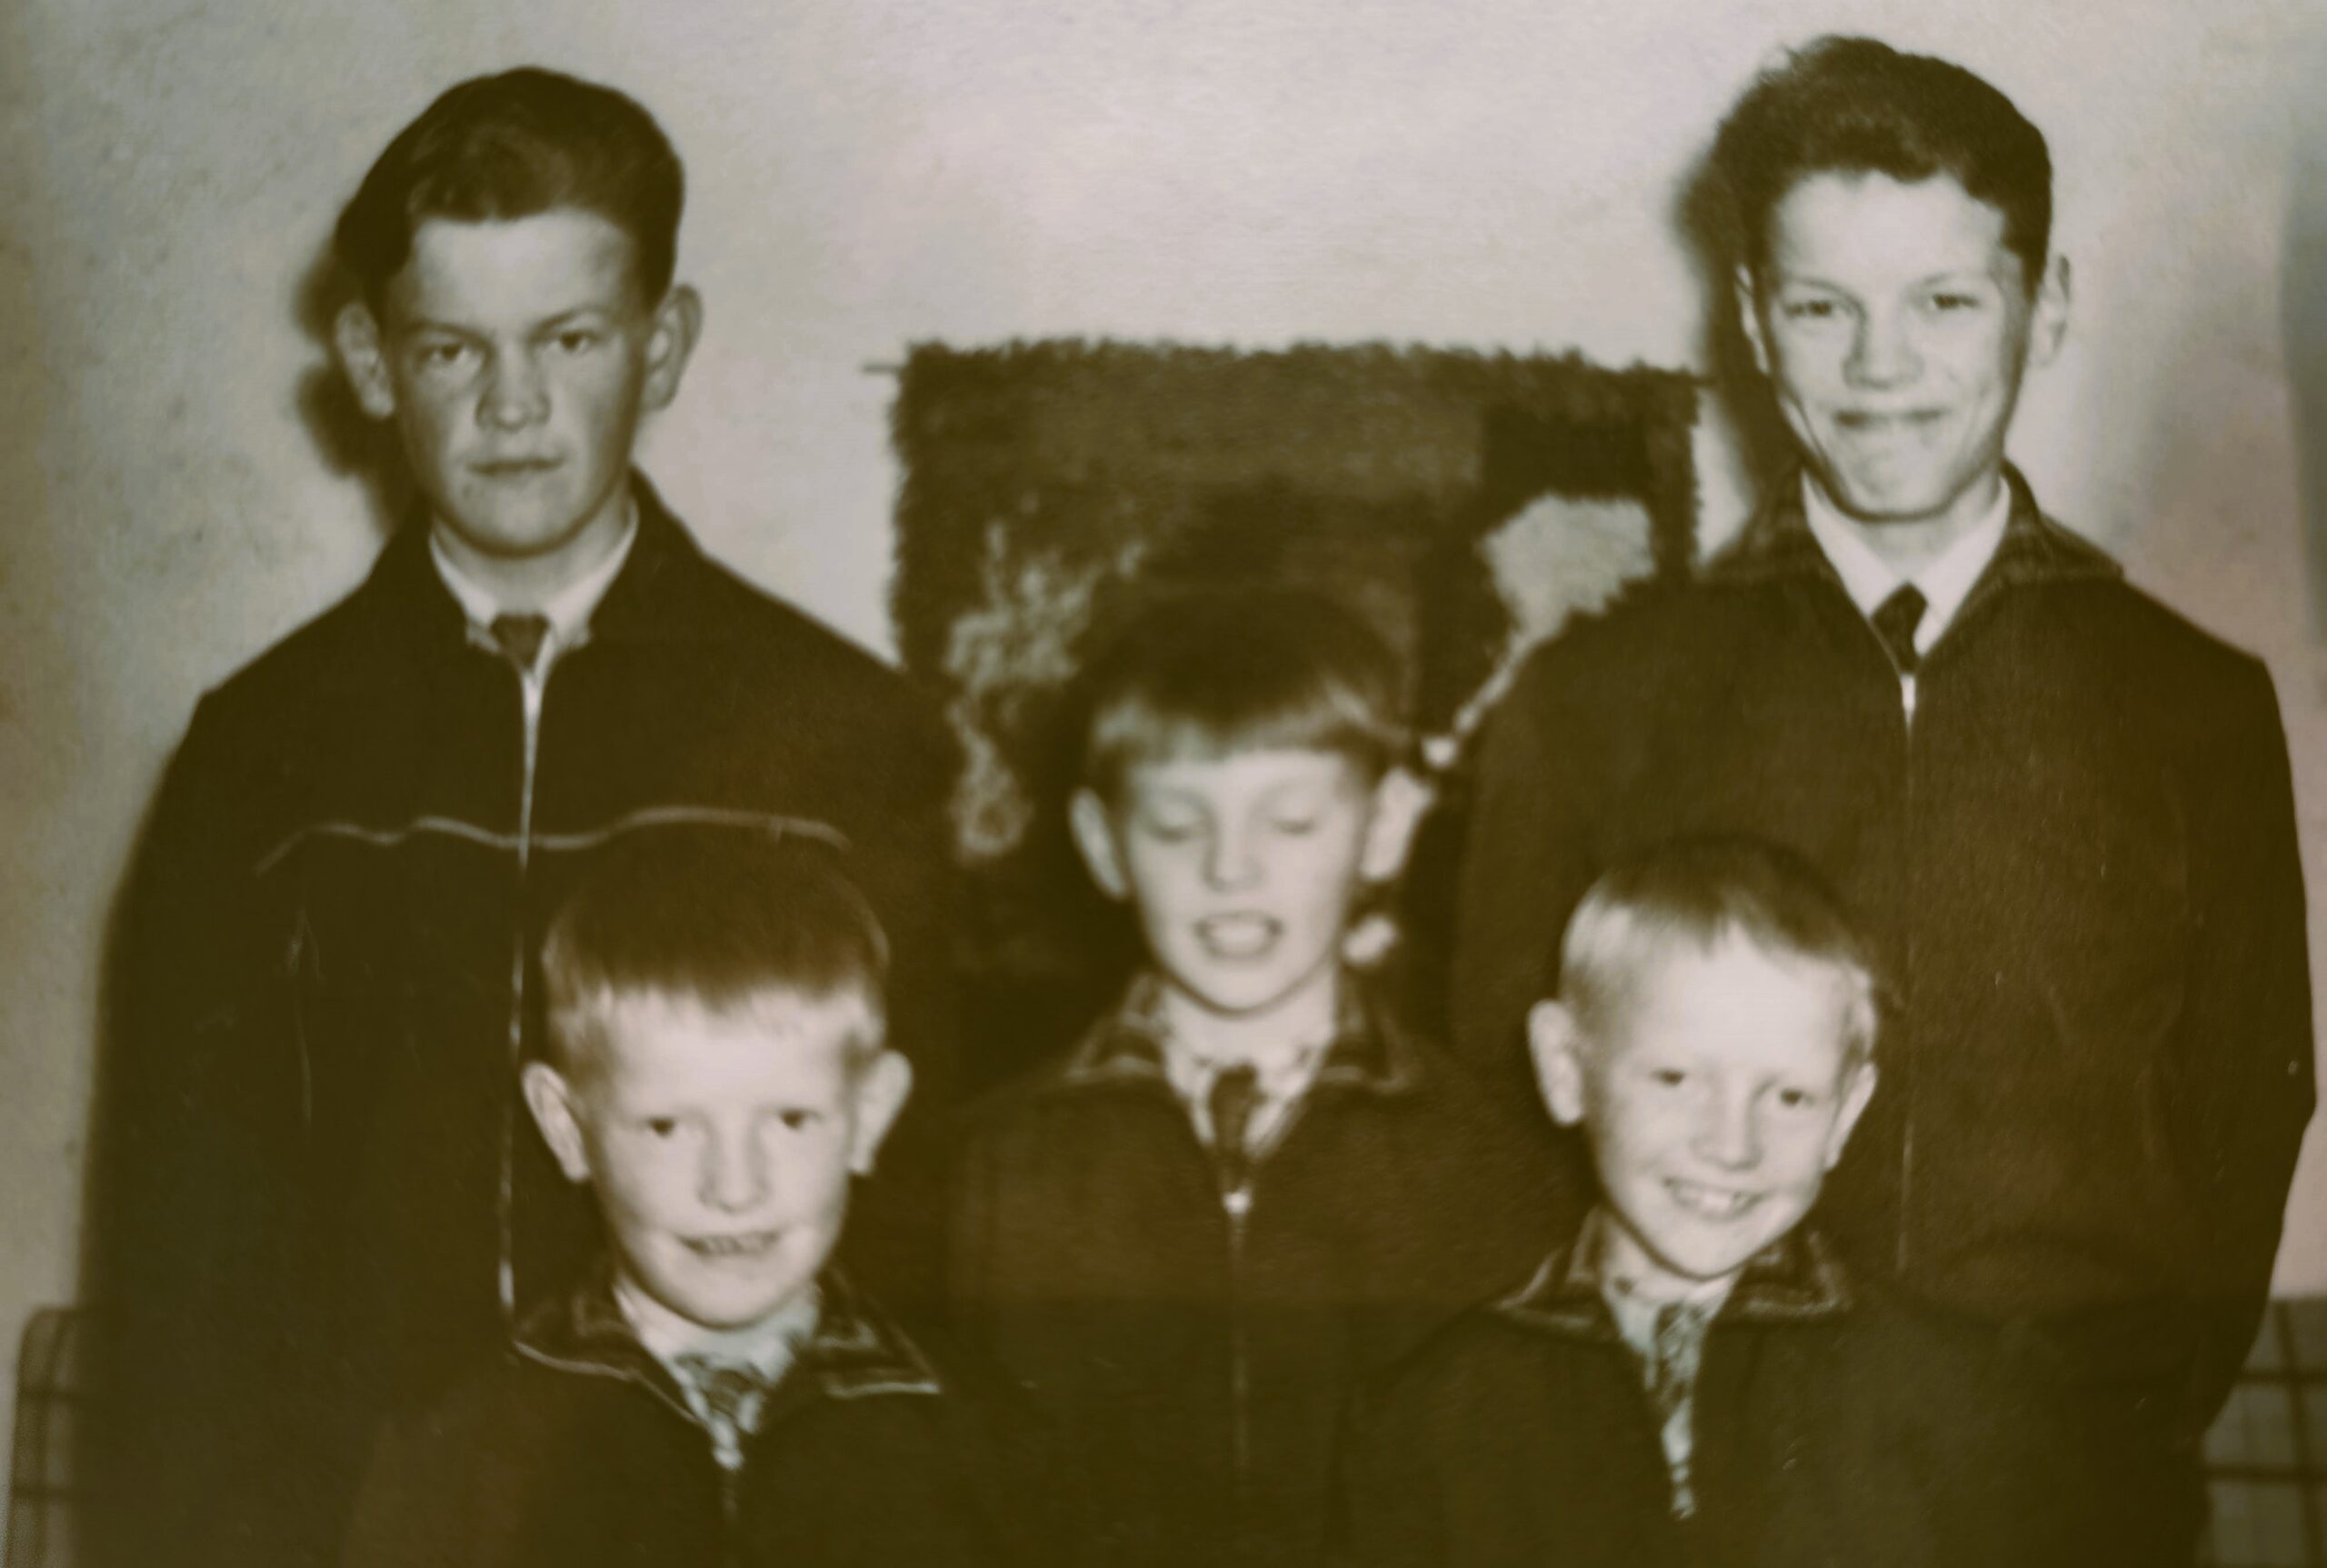 Lapin Muistiyhdistyksellä on muistiosaamista. Mustavalkoinen kuva, jossa viisi nuorta poikaa. Kuva 1950-luvulta.